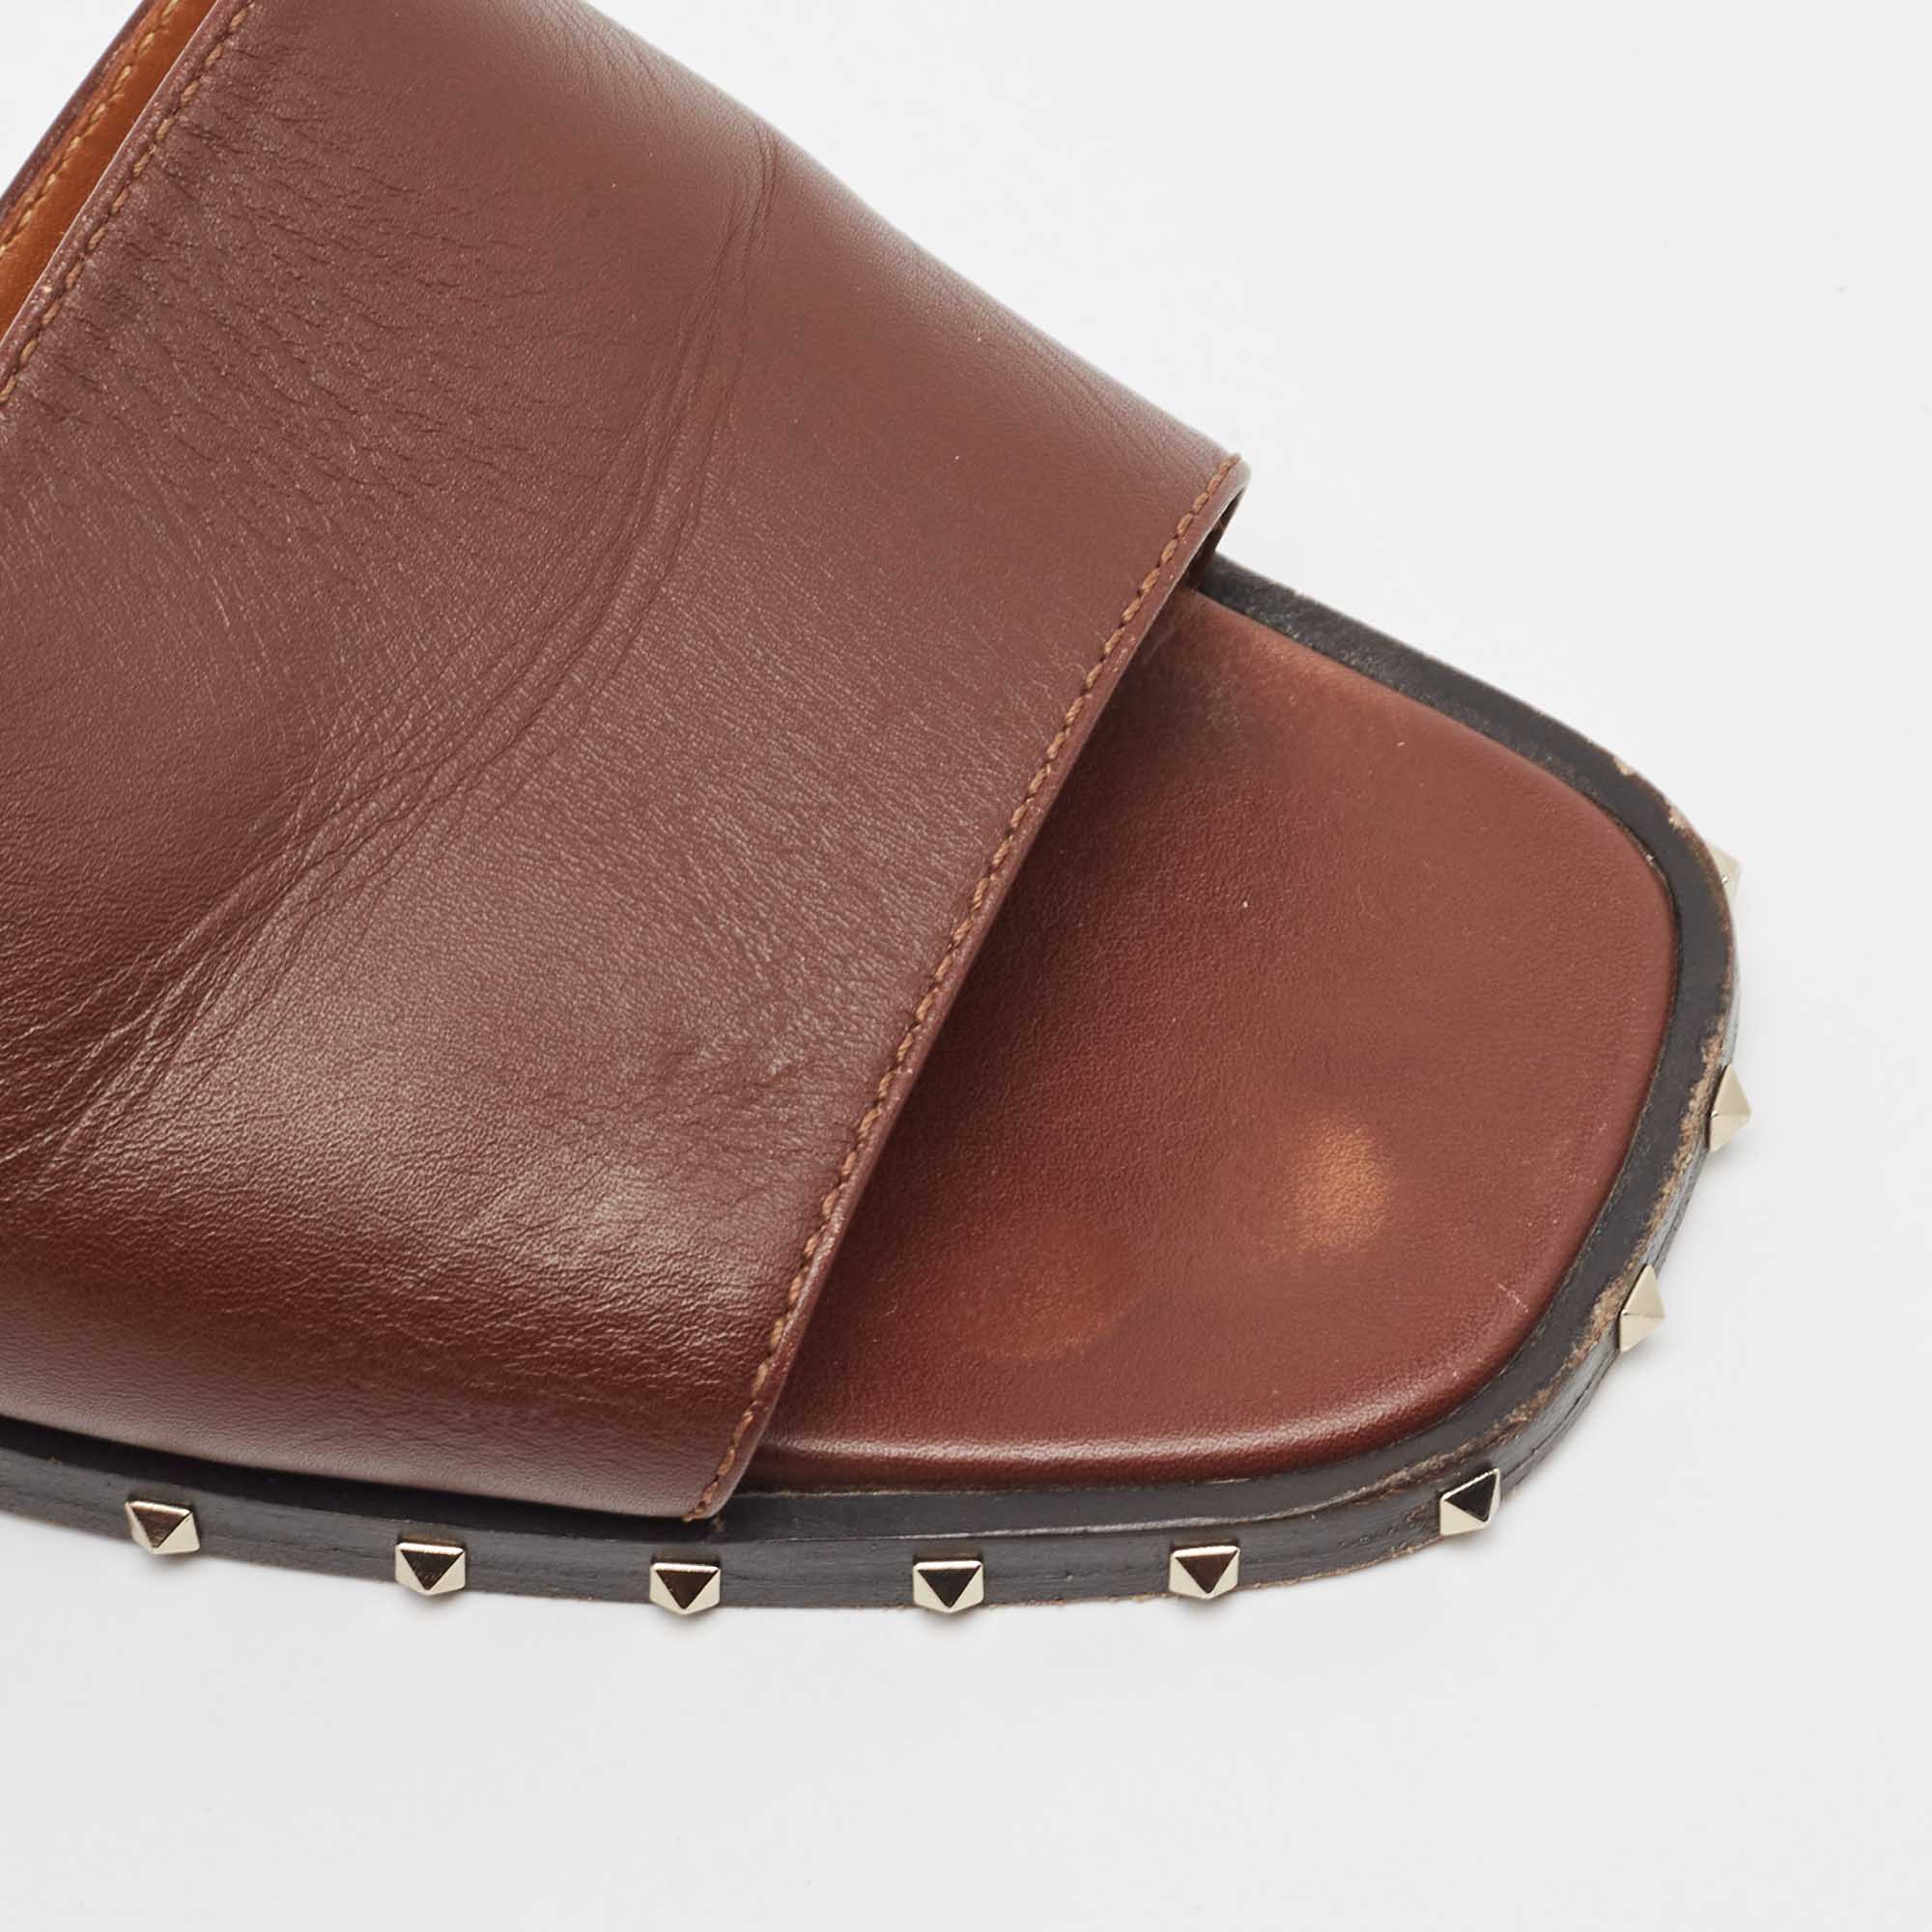 Valentino Brown Leather Soul Rockstud Slide Sandals Size 38